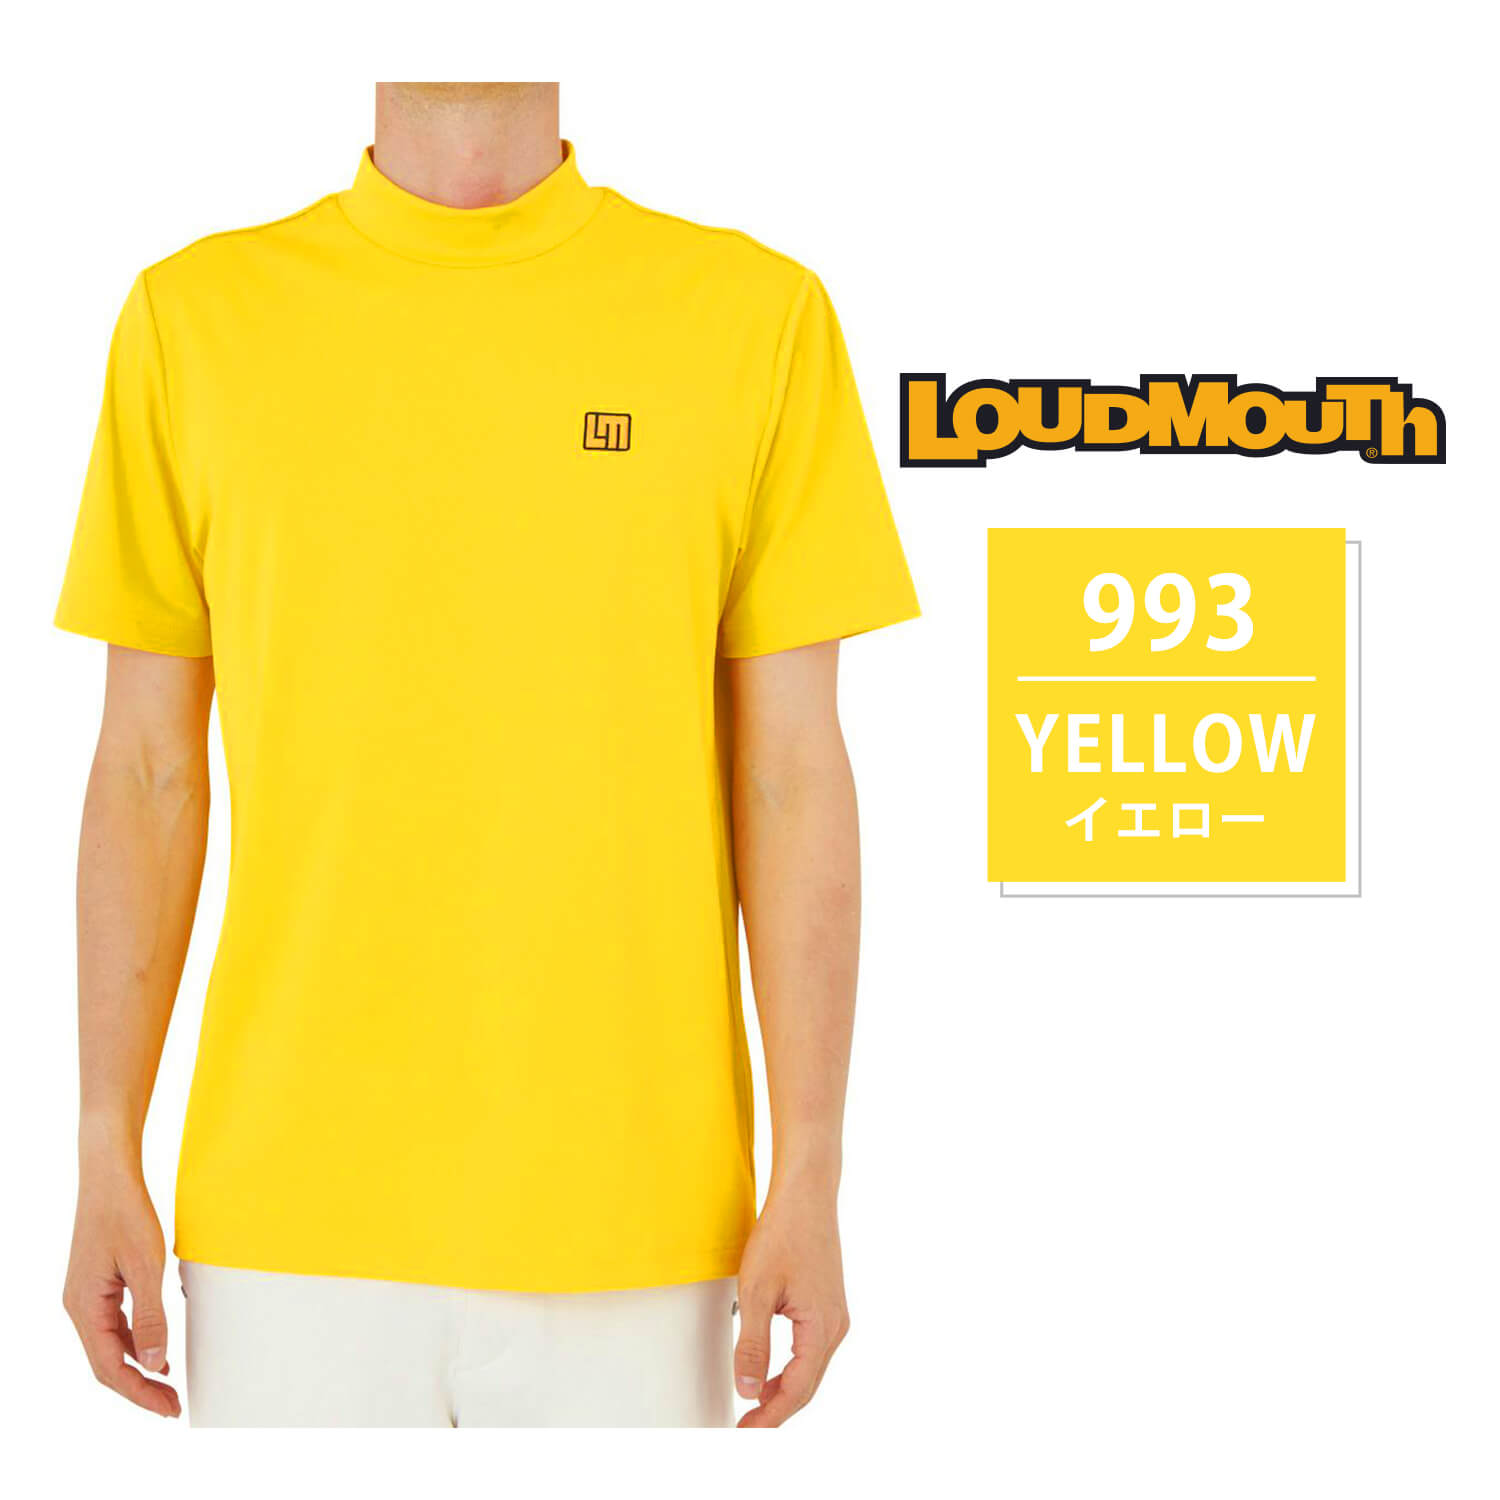 LOUDMOUTH ゴルフウェア Tシャツ メンズ 春 夏 モックネック 吸汗速乾 UVカット 刺繍...